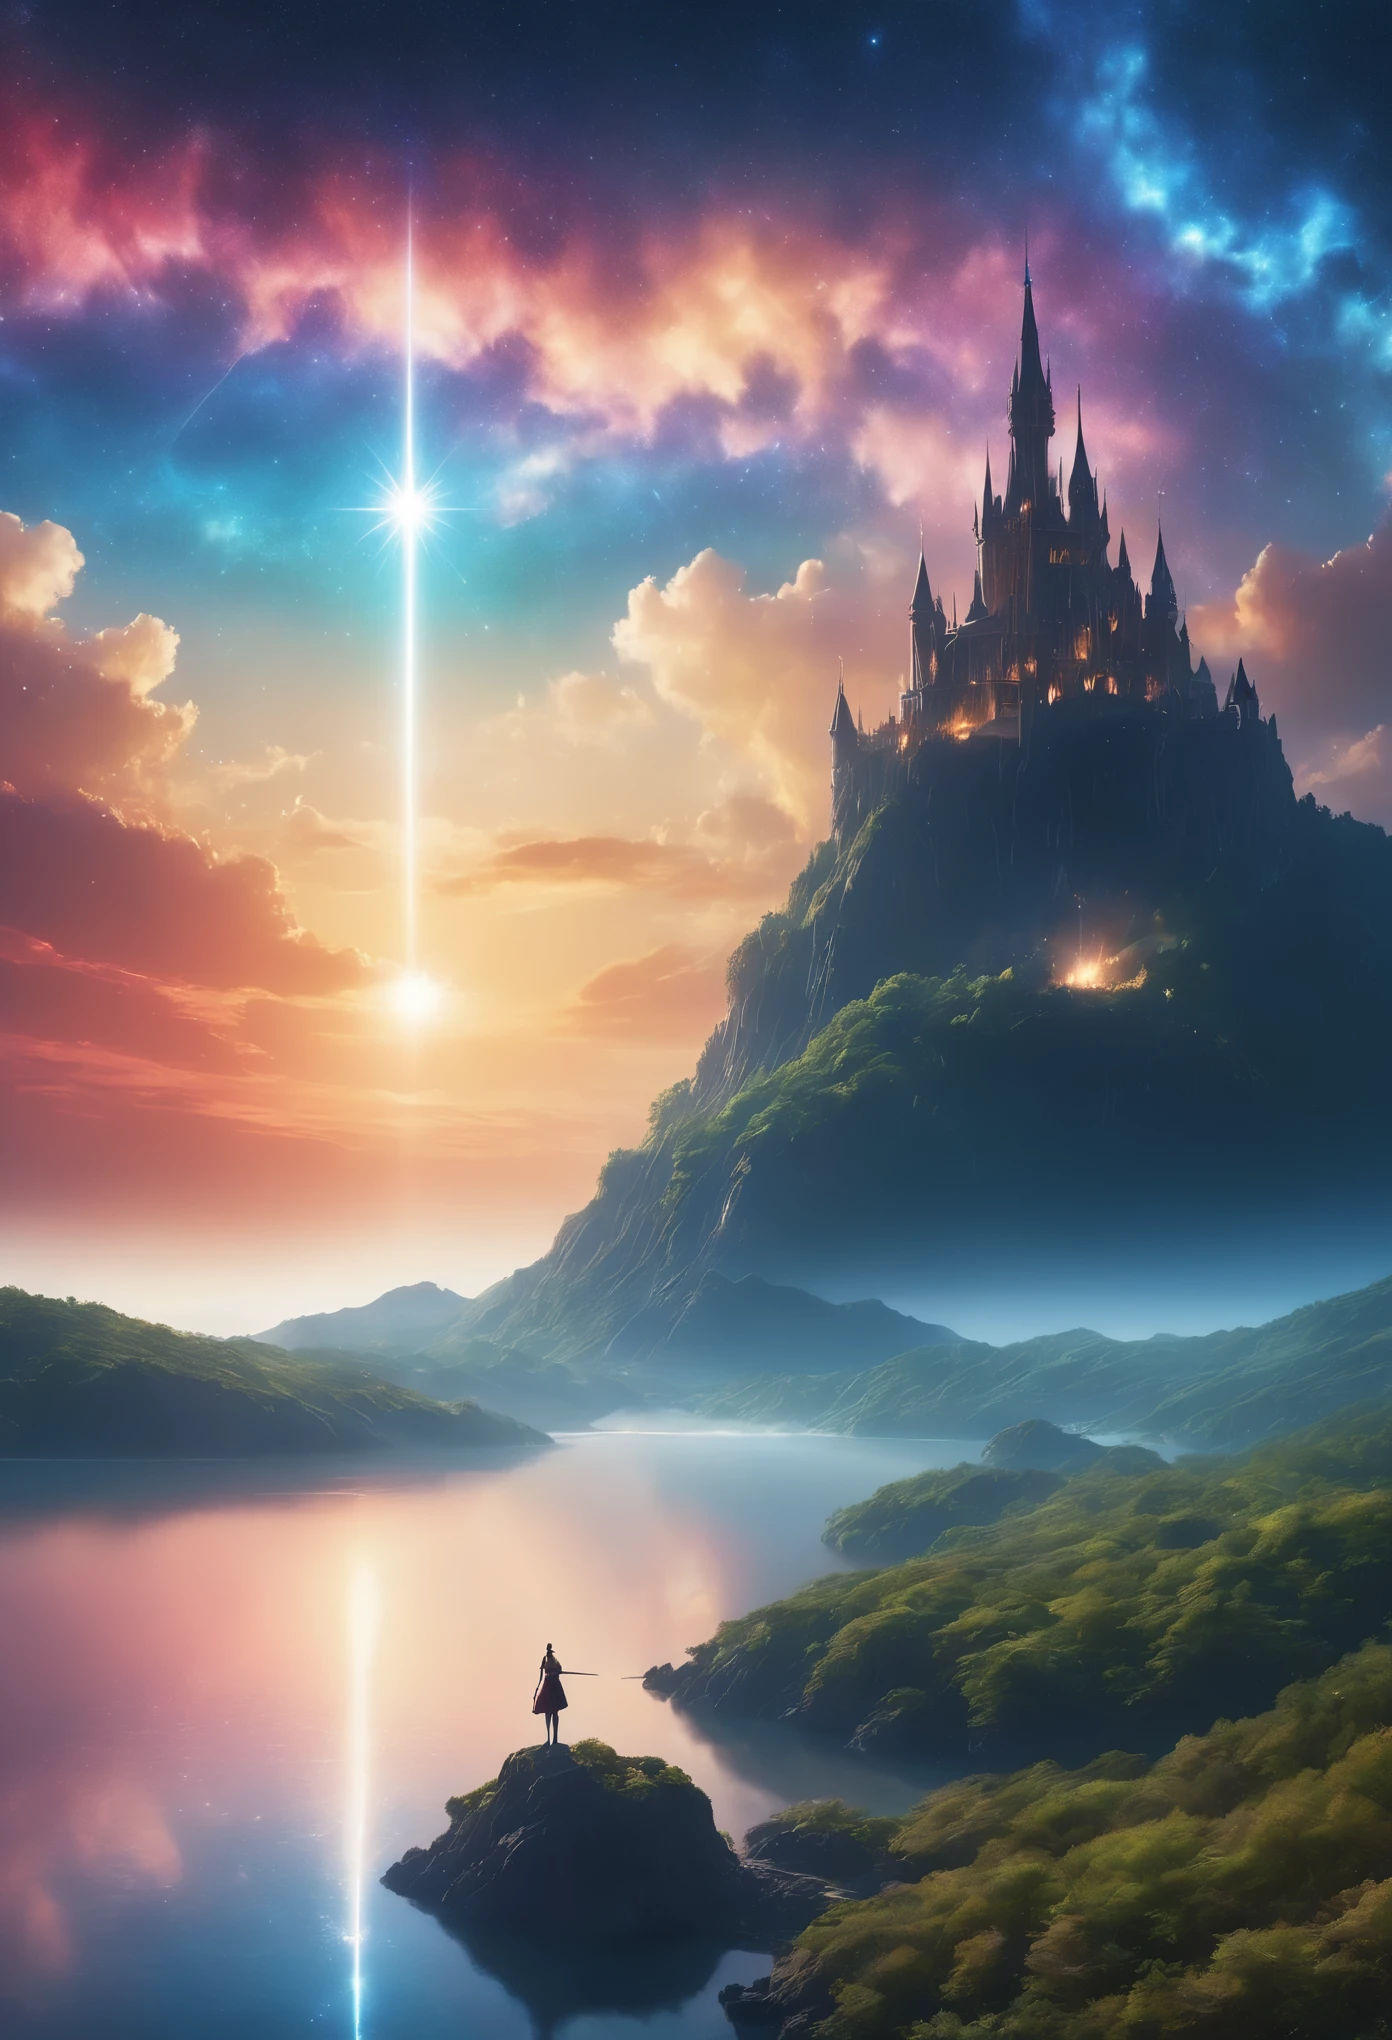 (8k, la plus haute qualité, chef-d&#39;œuvre, Style Final Fantasy: 1.2), (Irréaliste, Photoréaliste: 1.37), (une dame mage debout au bord du lac à distance, énorme buste rebondissant, avec l&#39;épée avec le feu, Lumière brillante vers le ciel:1.1), paysage de rêve, fantaisie, Des paysages irréels, Super détaillé, Château médiéval volant, Île flottante dans le ciel, Tourbillon de lumière à sept couleurs, (流星のM.Un oiseau brillant à longue queue vole dans le ciel:1.3), aurore, Des éclairs intenses, voie Lactée, lumière complexe, M.々Lumière colorée, Grand Lac, Ciel étoilé reflété à la surface du lac, D&#39;innombrables étoiles brillantes, météores, De nombreux météores, Aura de, (Un pilier de lumière émanait du sol:1,2), 複雑な文M.cercle magique,